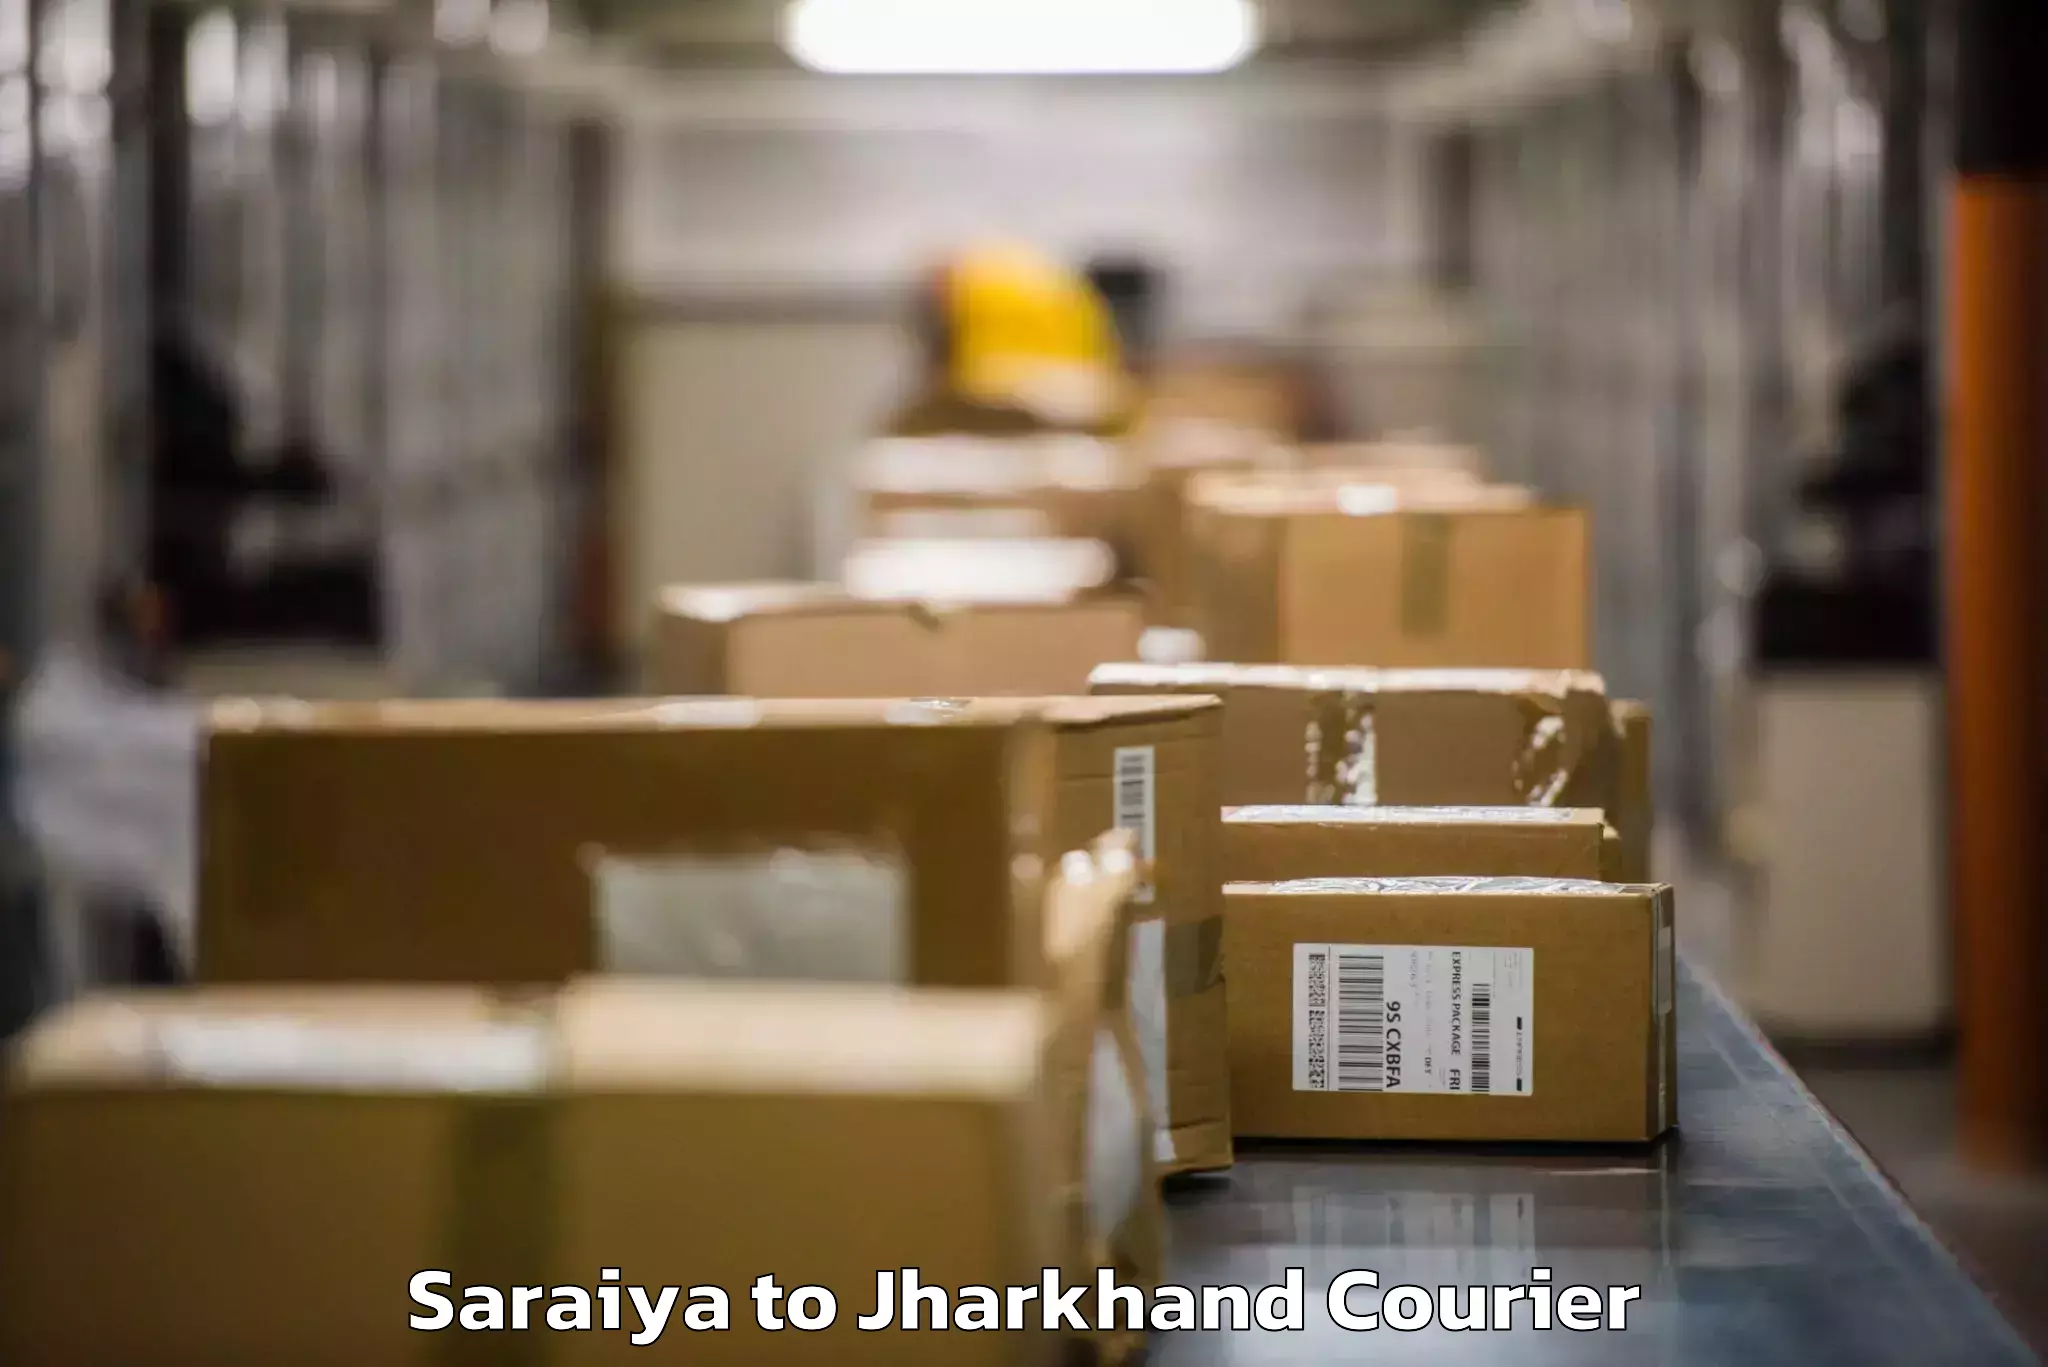 Baggage shipping experts Saraiya to Isri